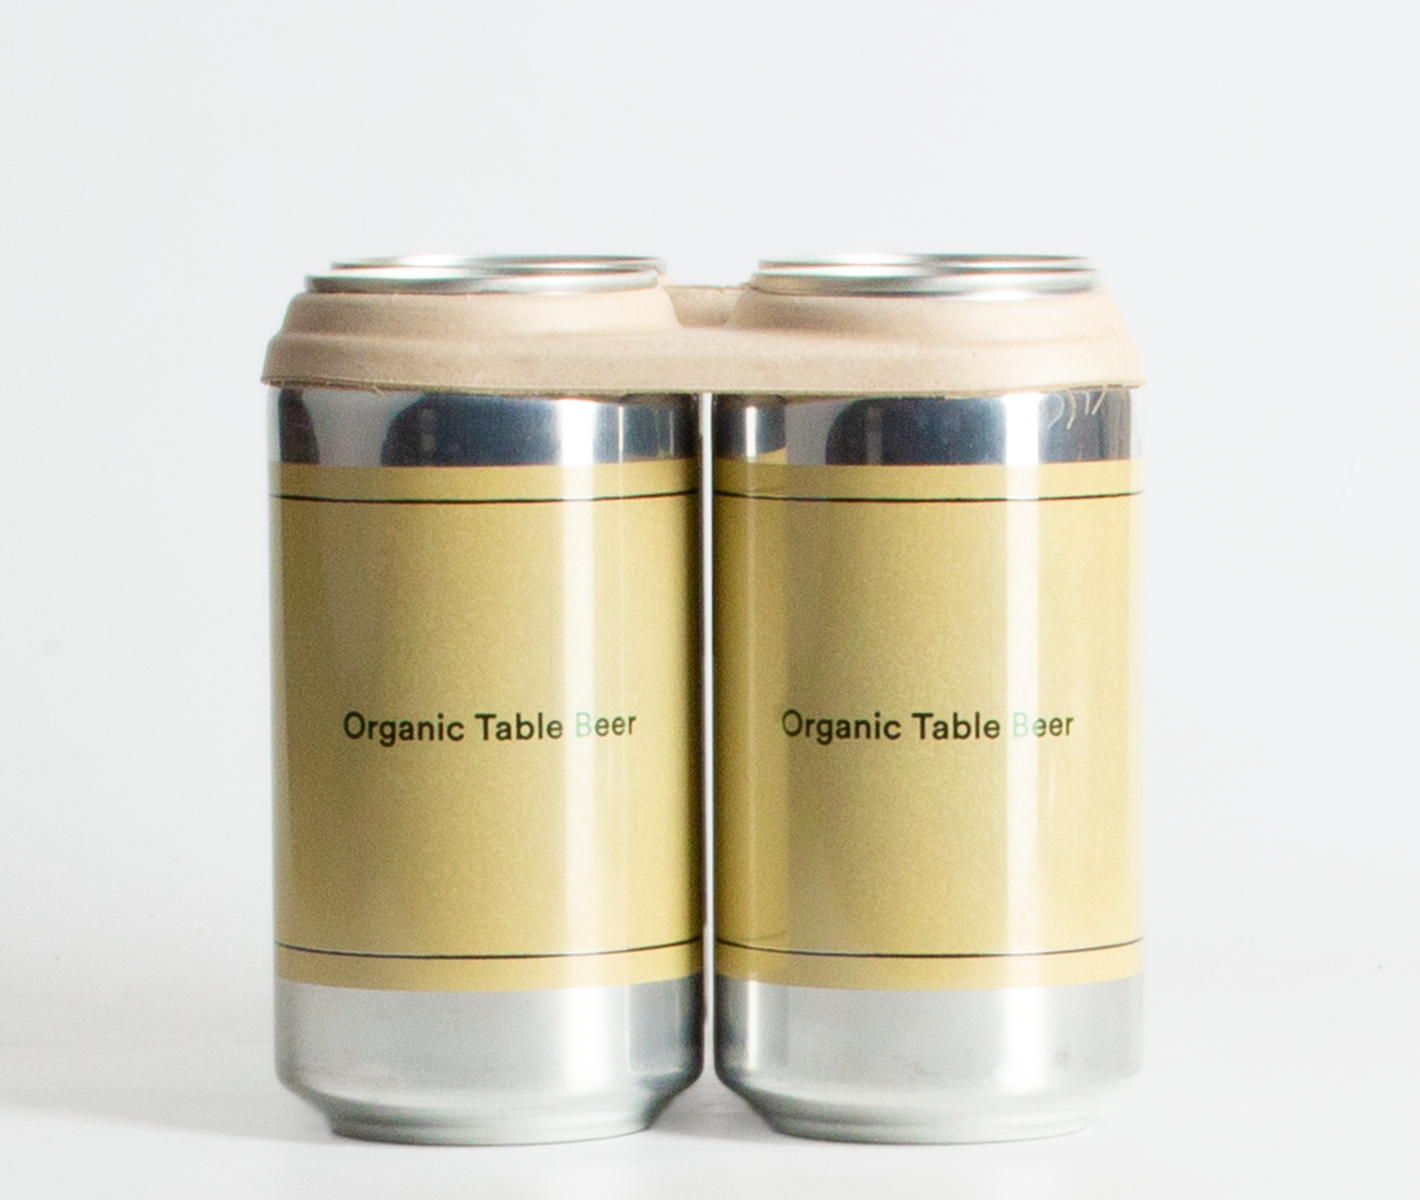 Wildflower Organic Table Beer 4 Pack (375ml)